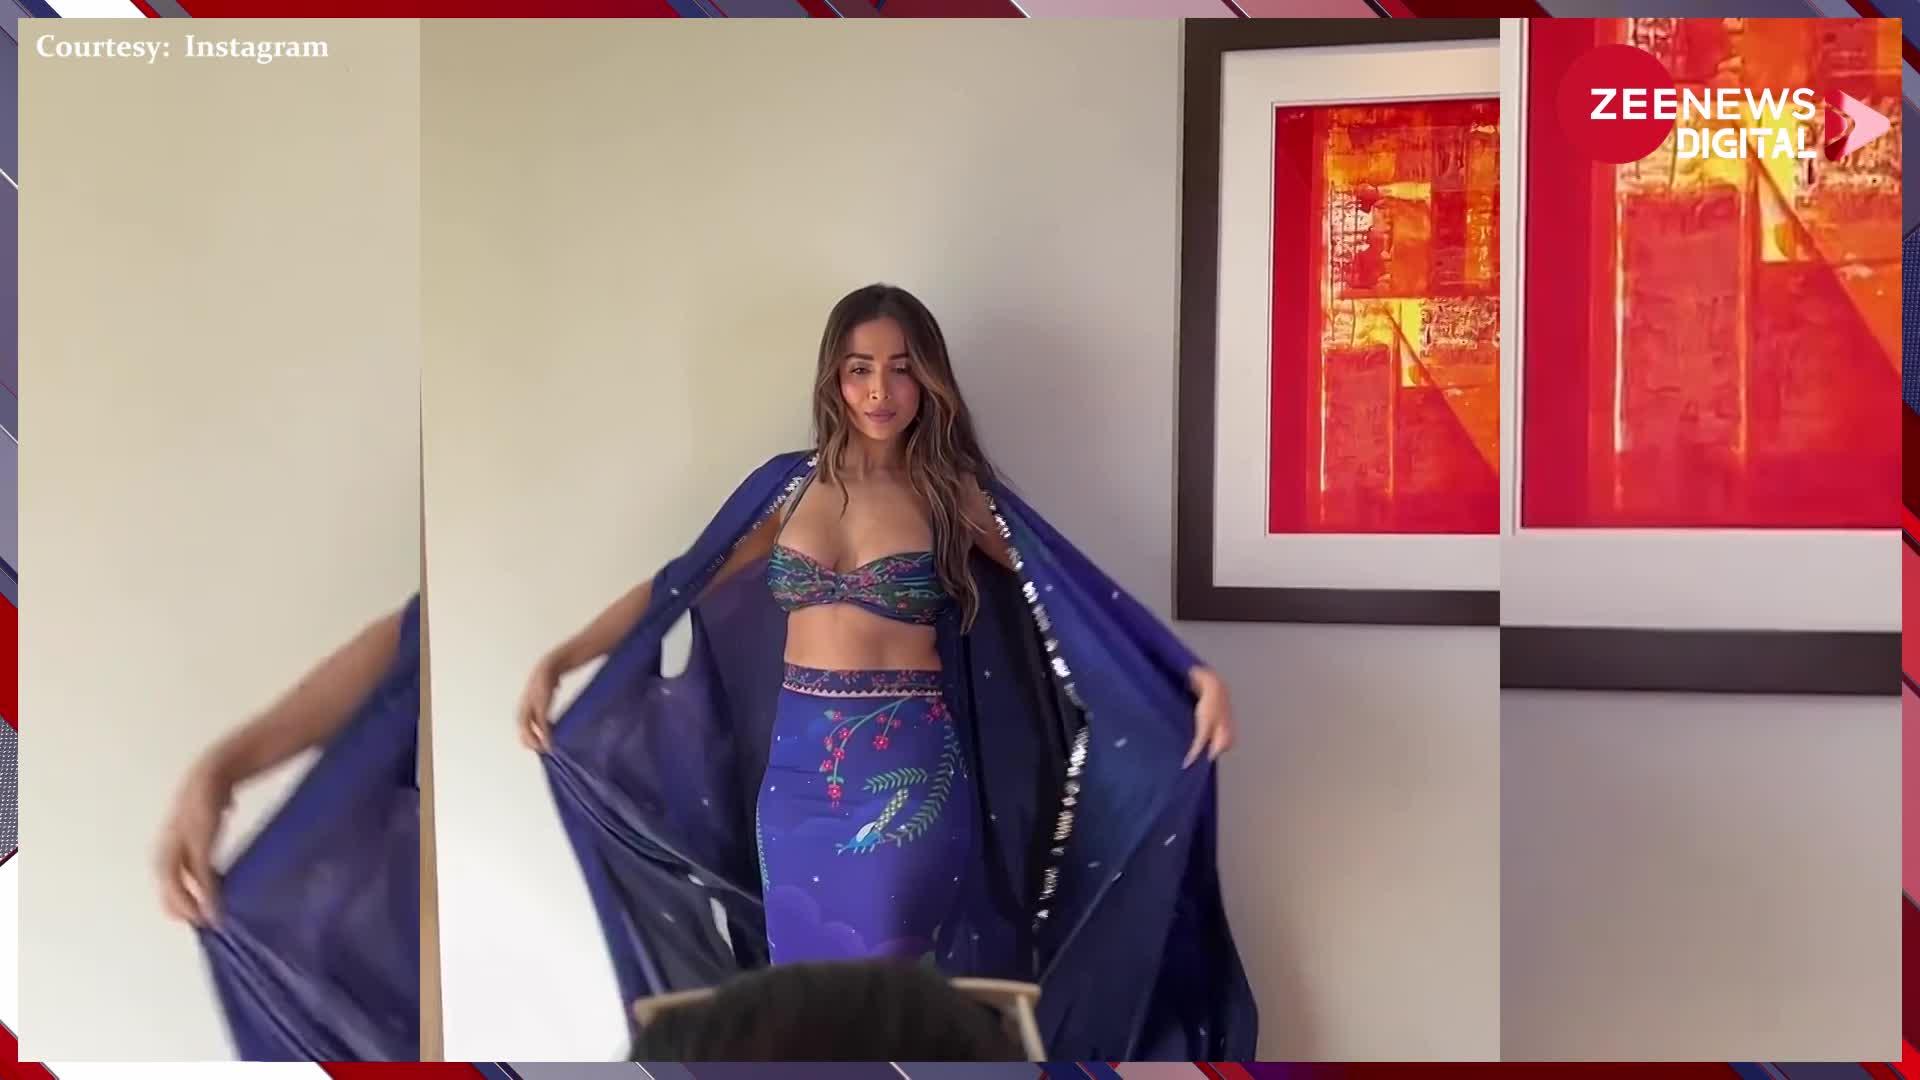 49 साल की उम्र में Malaika Arora ने ब्रालेट पहन बढाया इंटरनेट का पारा, श्रग हवा में उड़ाकर चलाया अपने हुस्न का जादू